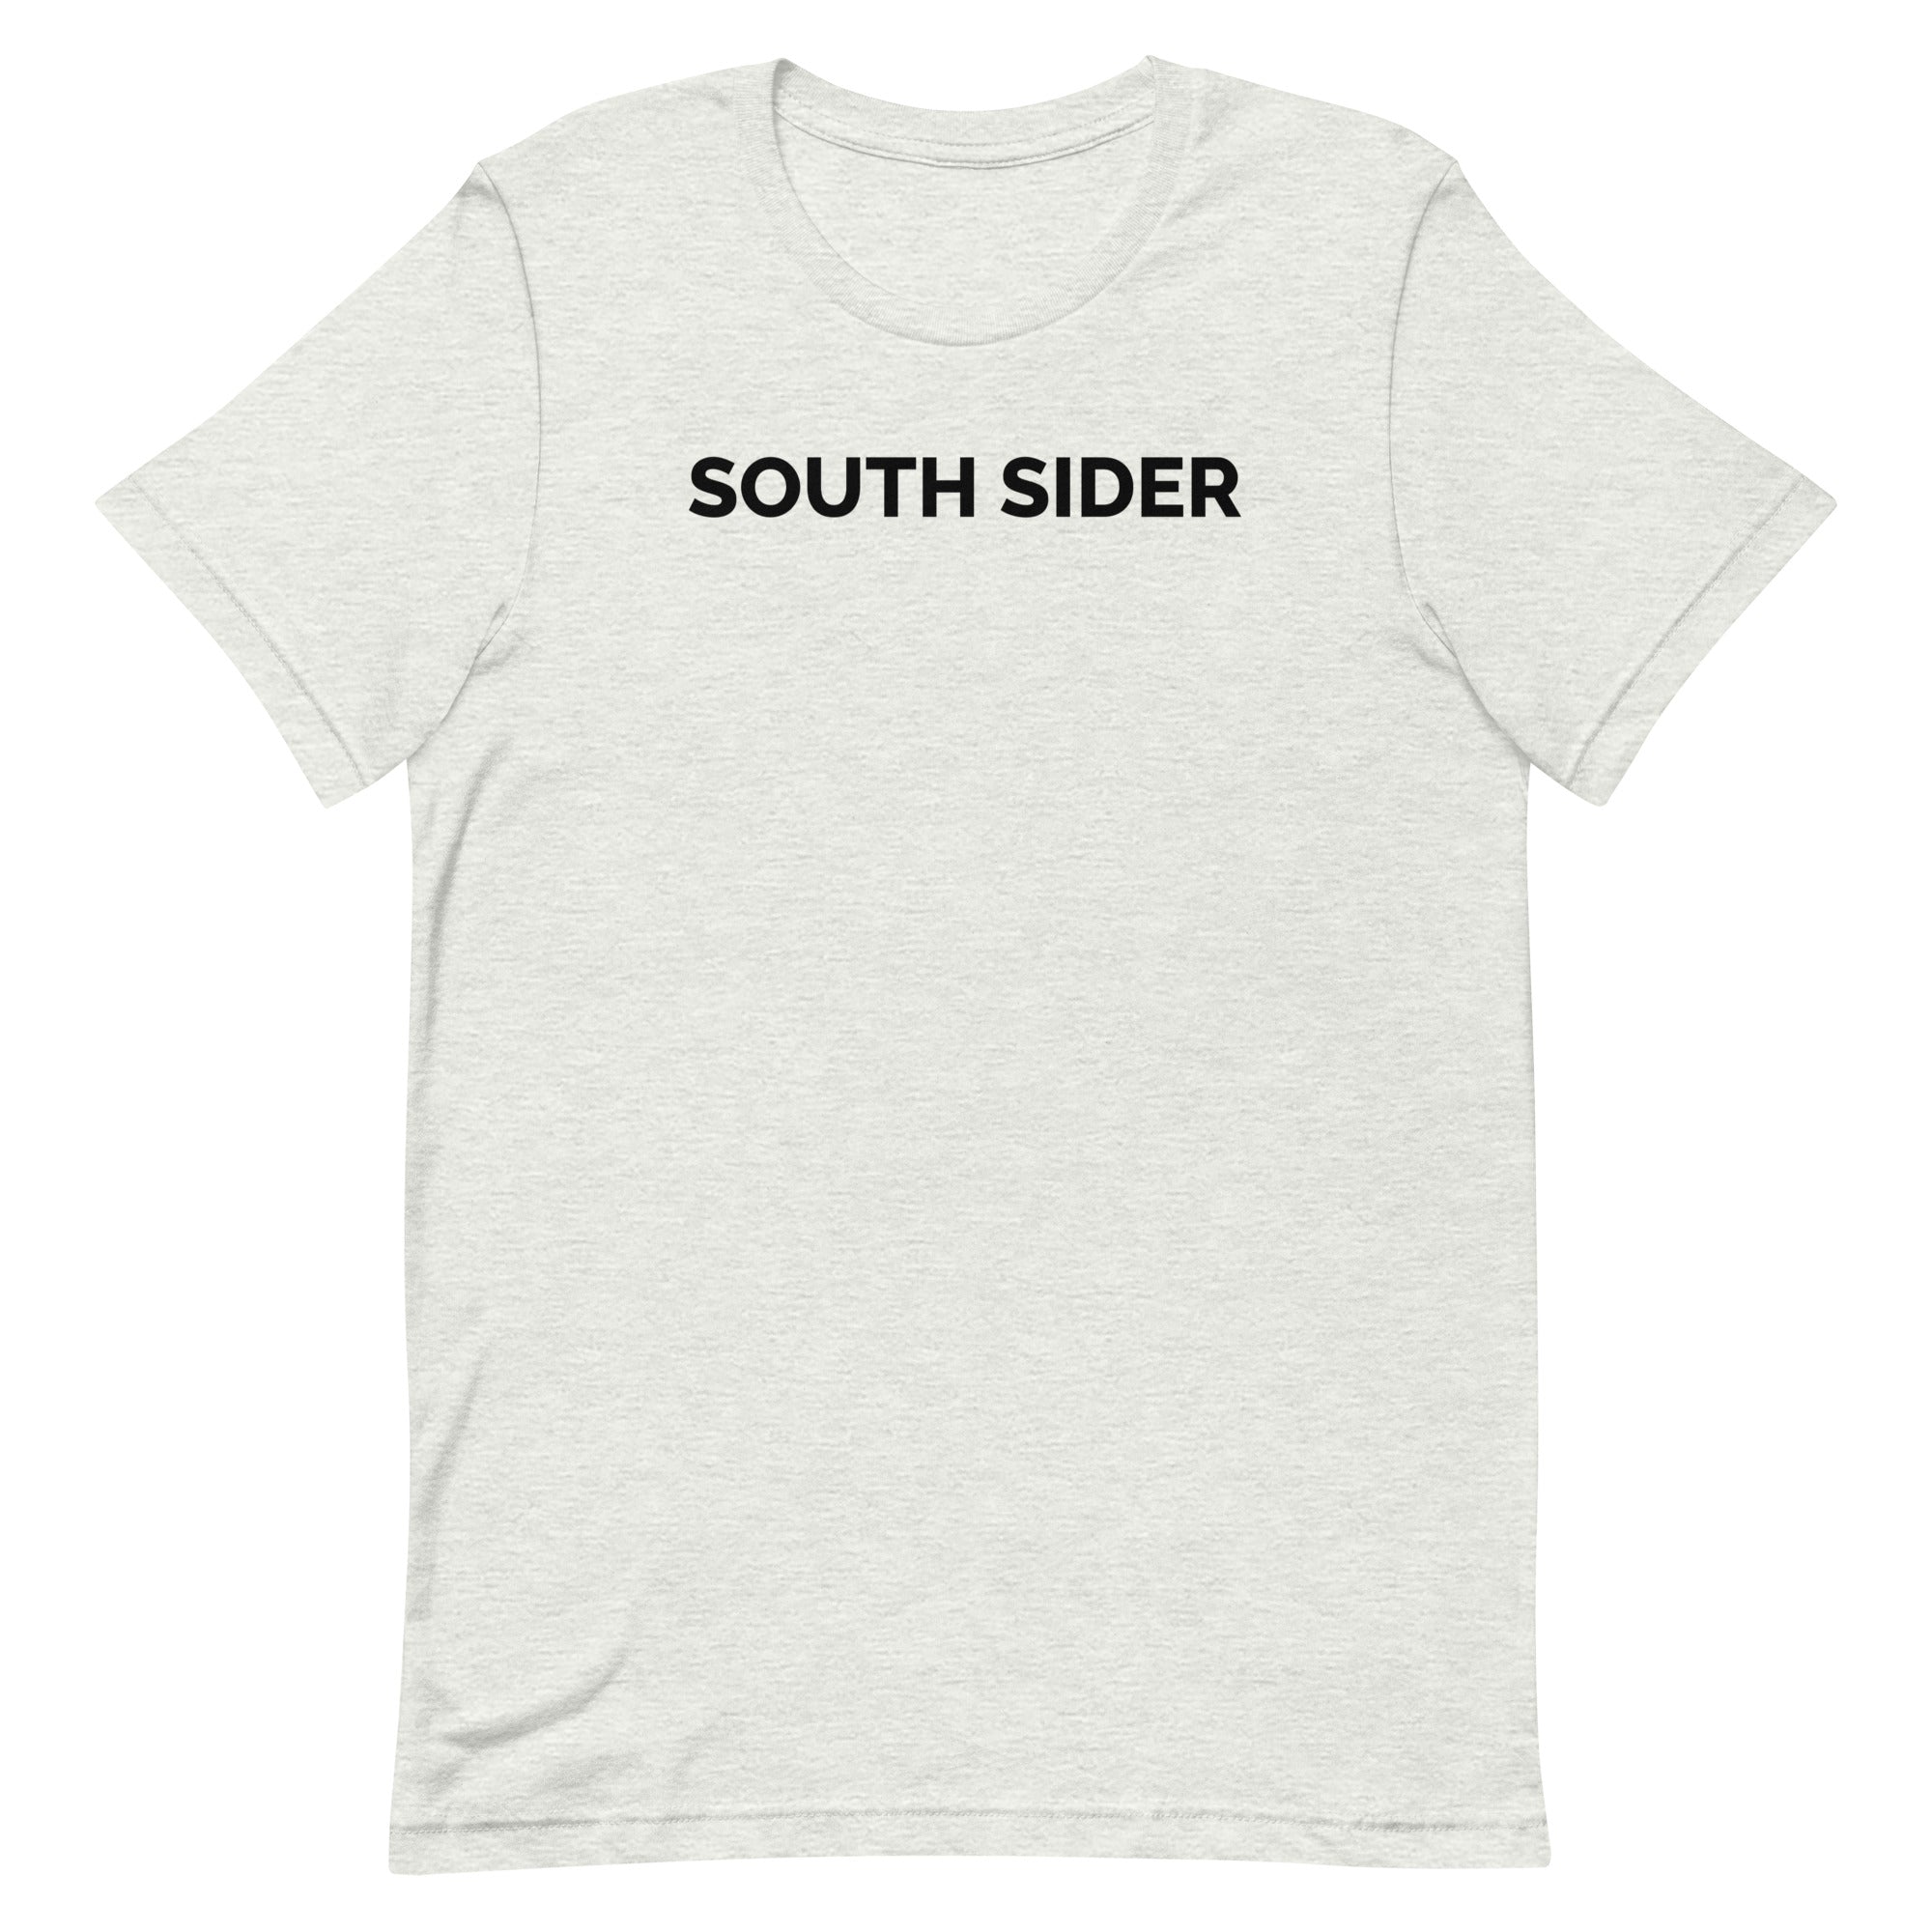 South Side T-shirt Southside T-shirt Southside in Olde -  Israel